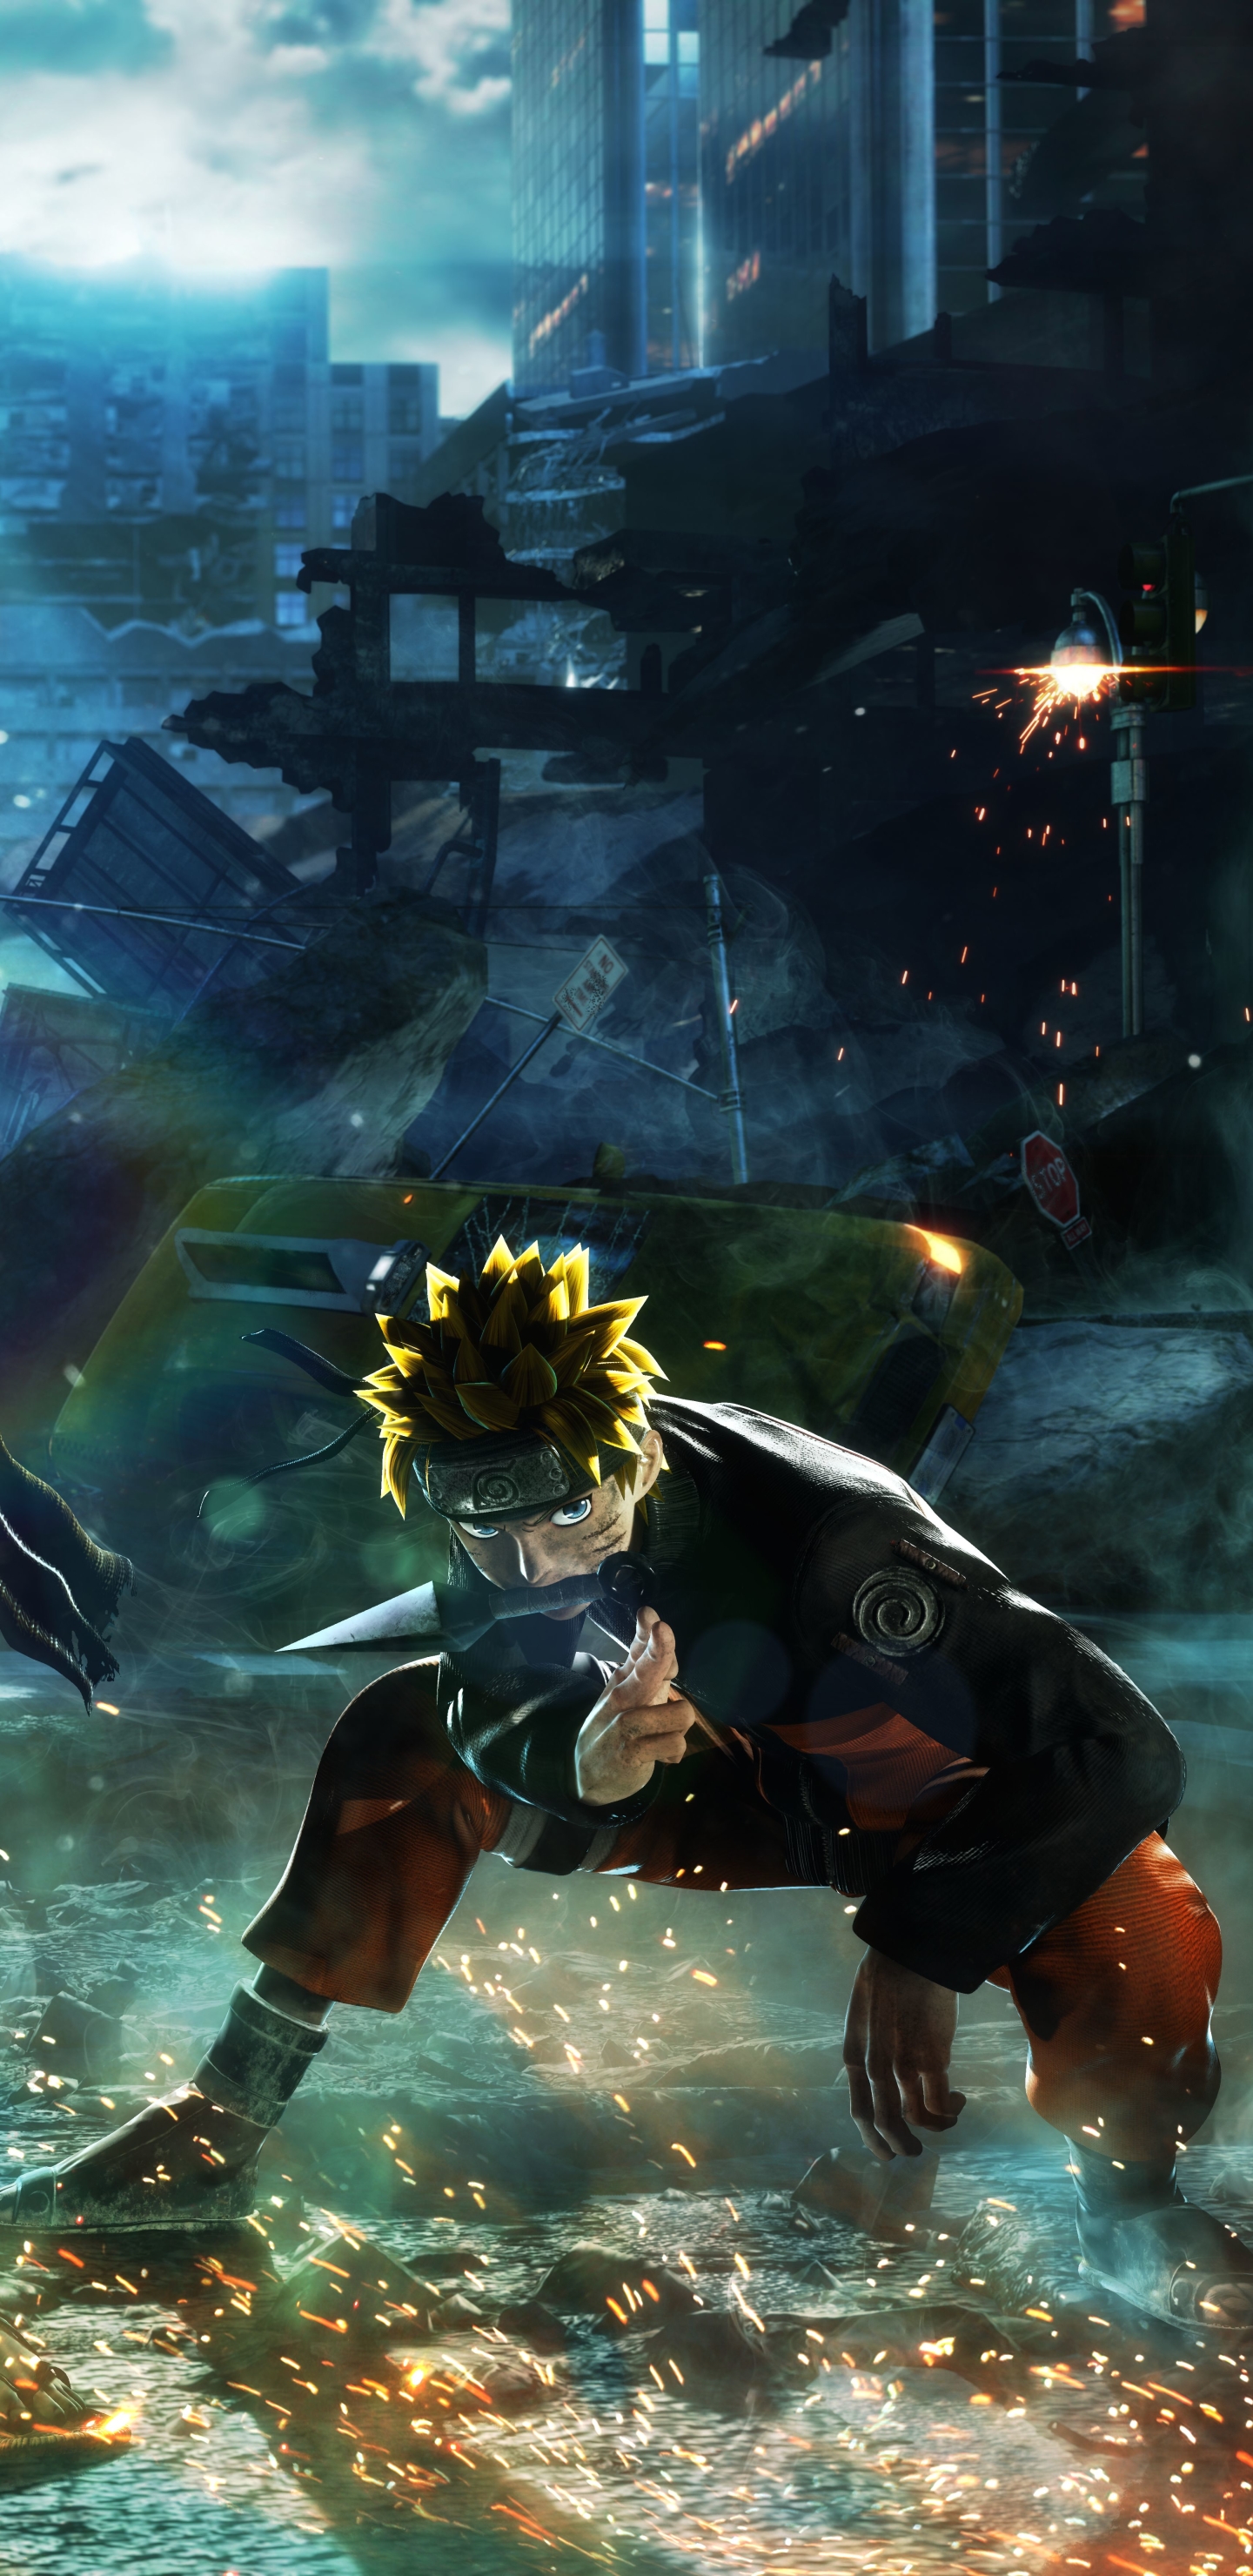 Descarga gratuita de fondo de pantalla para móvil de Videojuego, Naruto Uzumaki, Jump Force.